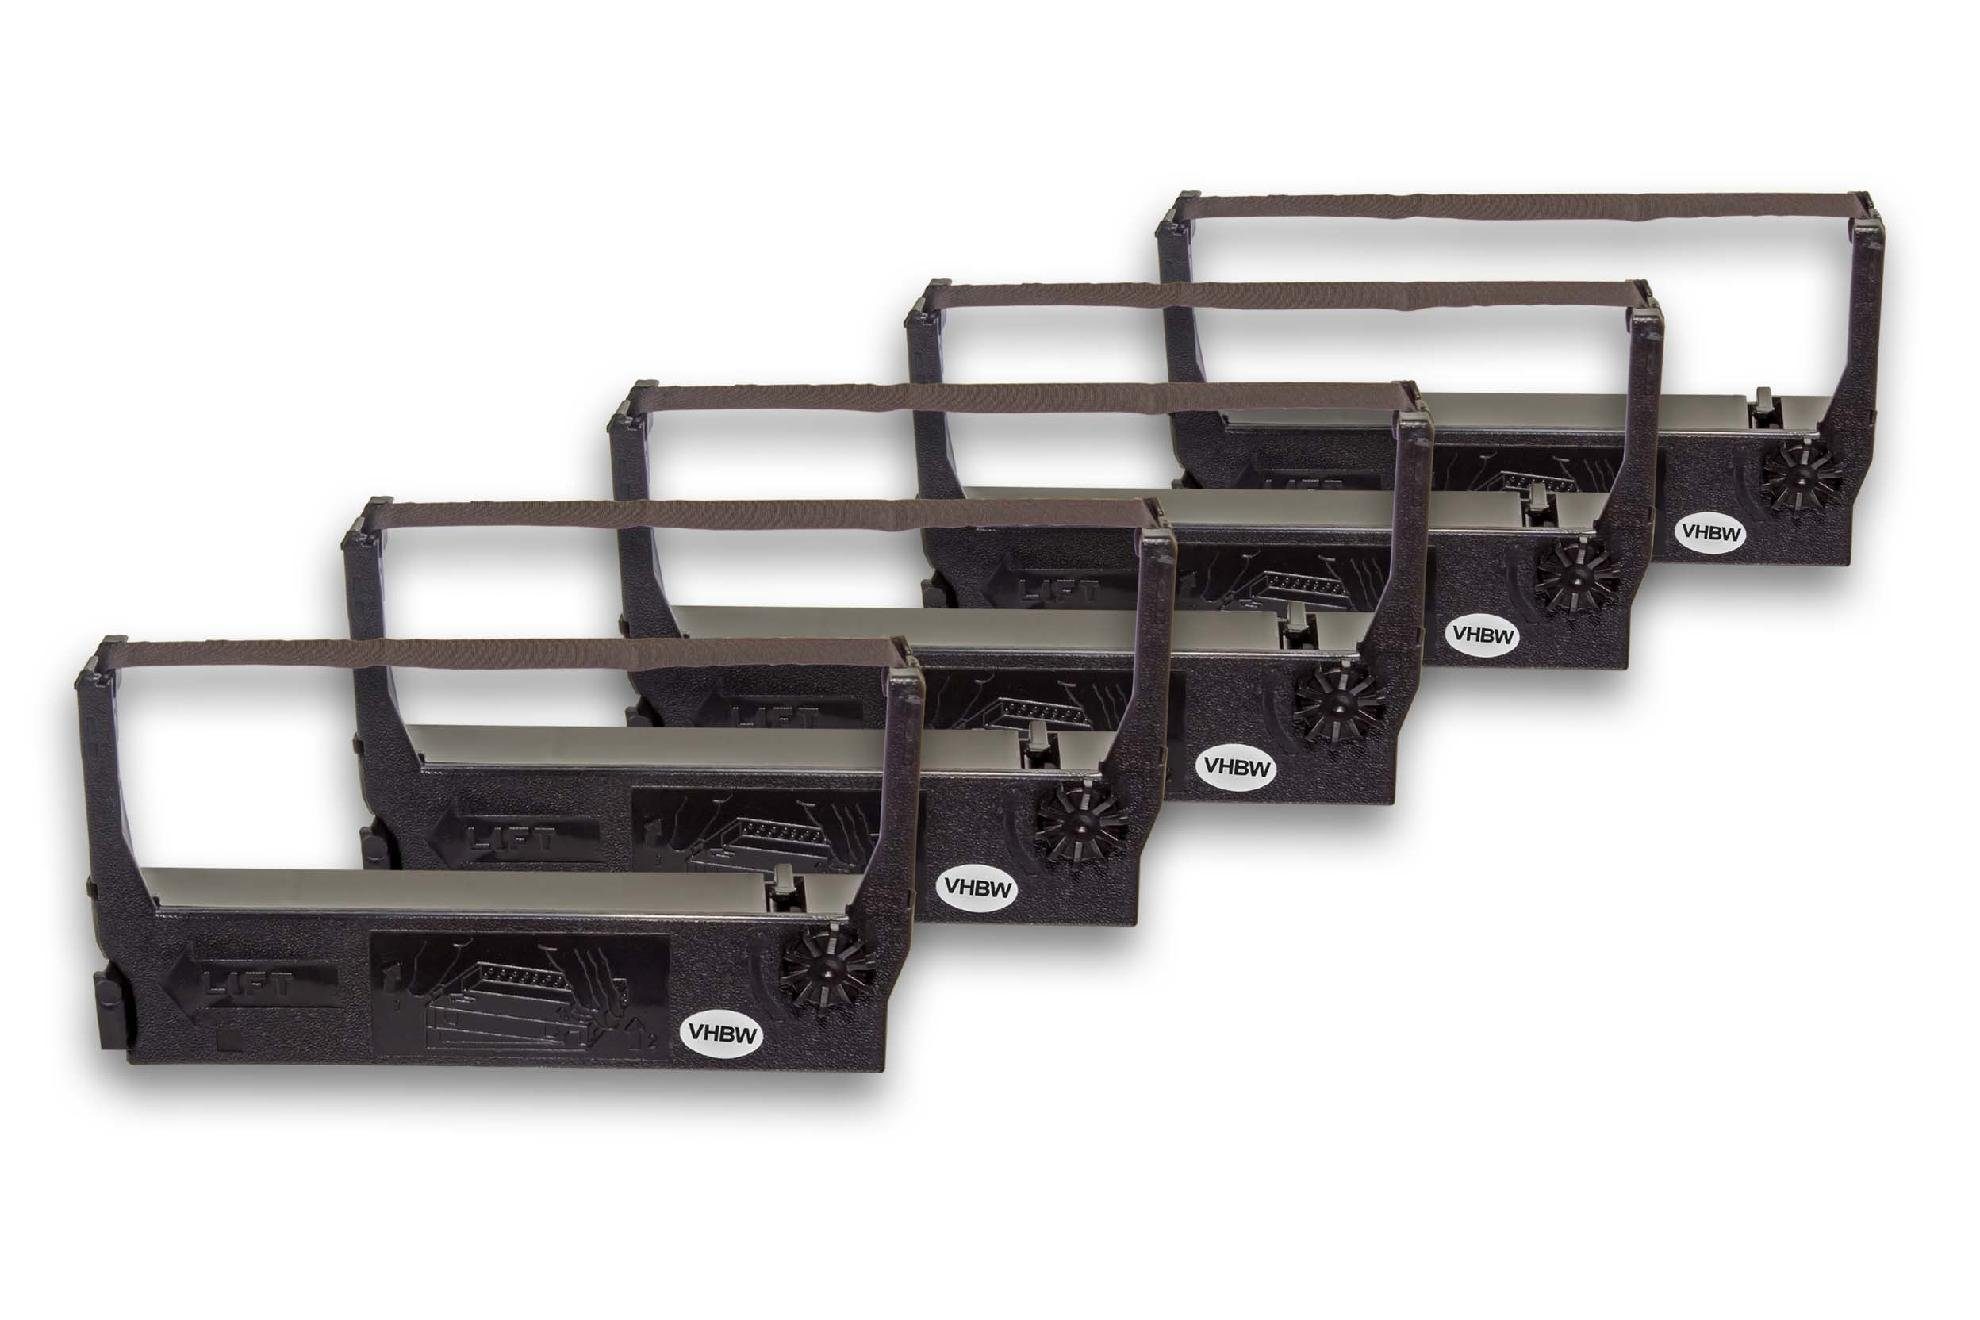 Drucker & ECR Kopierer ECR Nadeldrucker Beschriftungsband, 590 passend ECR Series, für ER 3210 vhbw Sanyo 595, 590, 3210, ECR